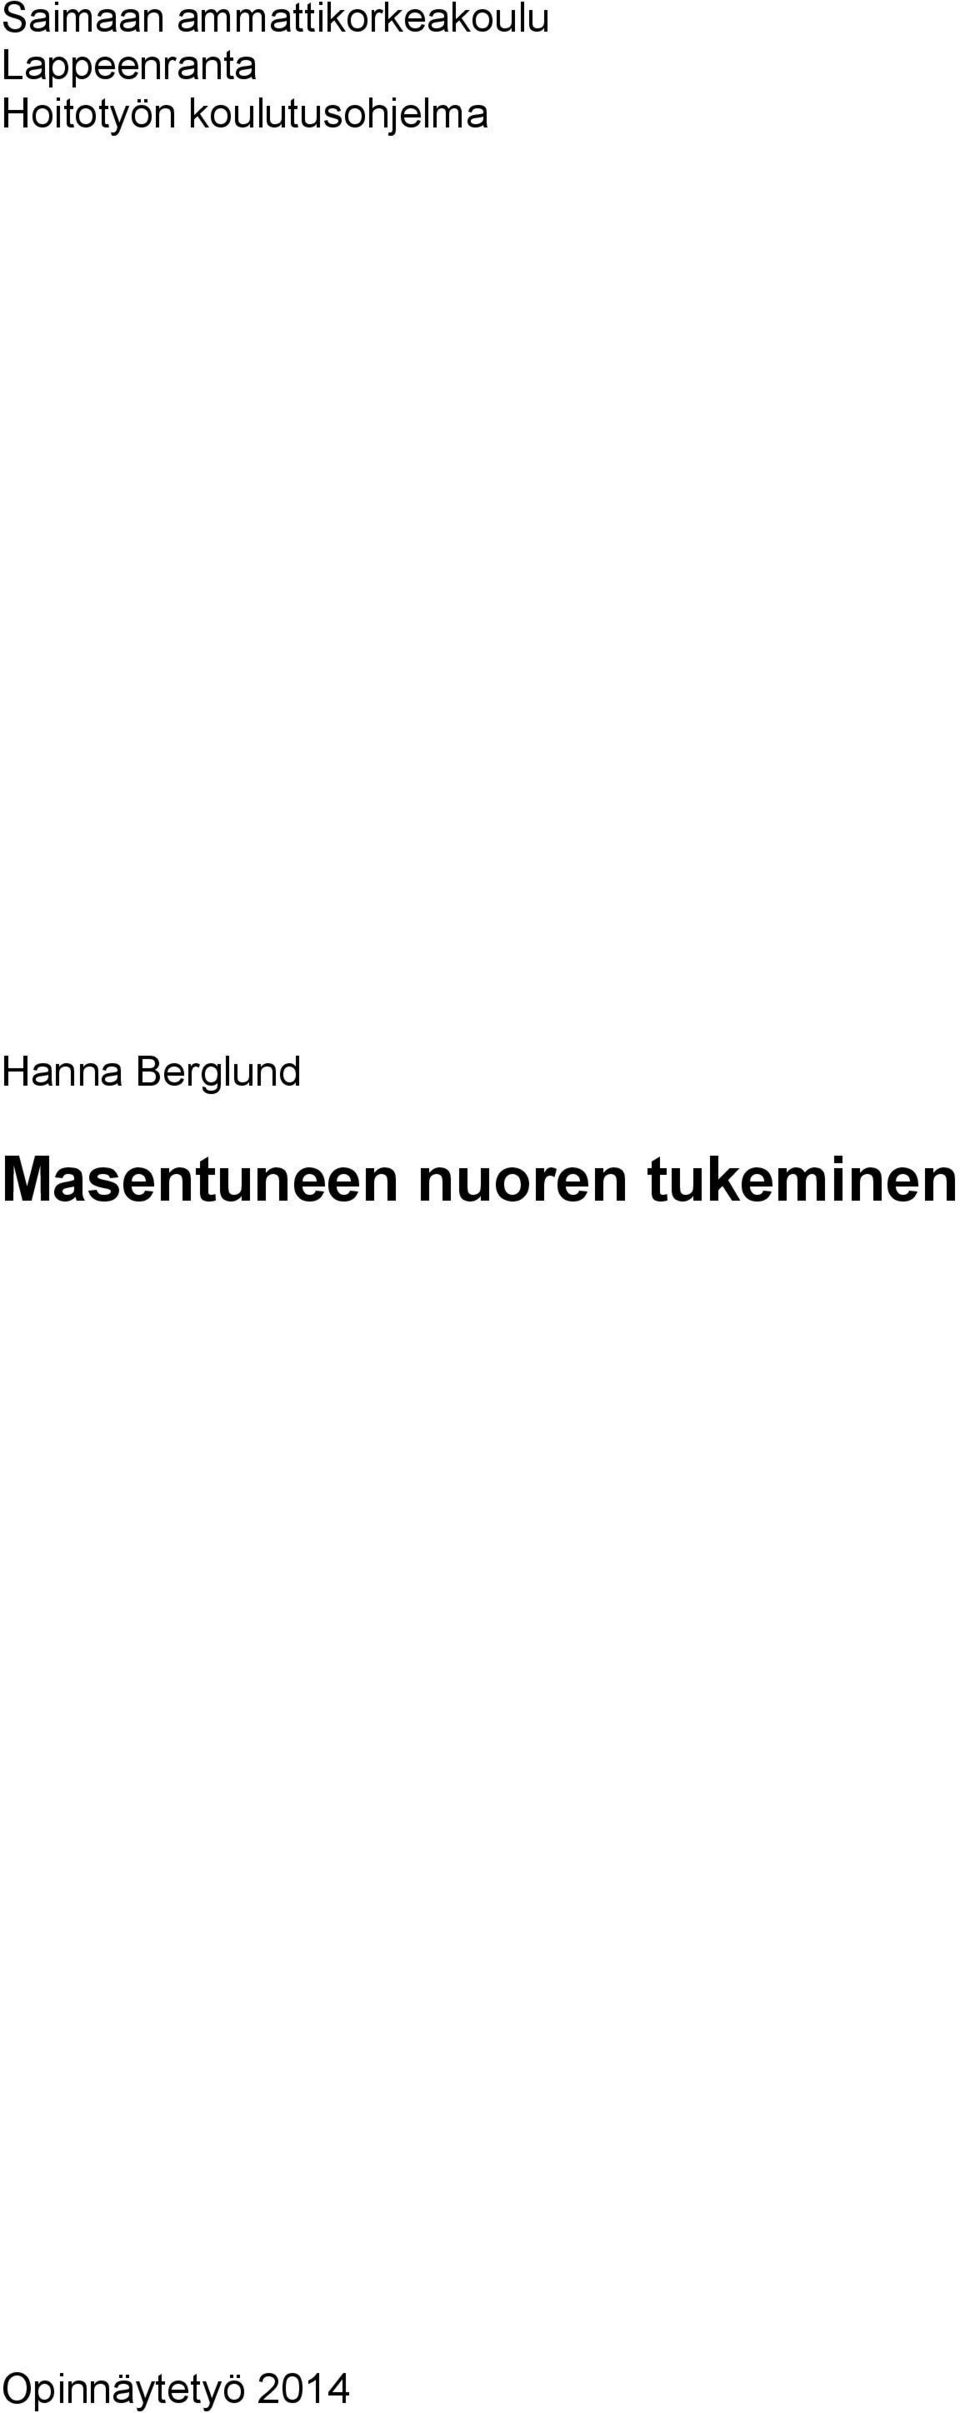 koulutusohjelma Hanna Berglund